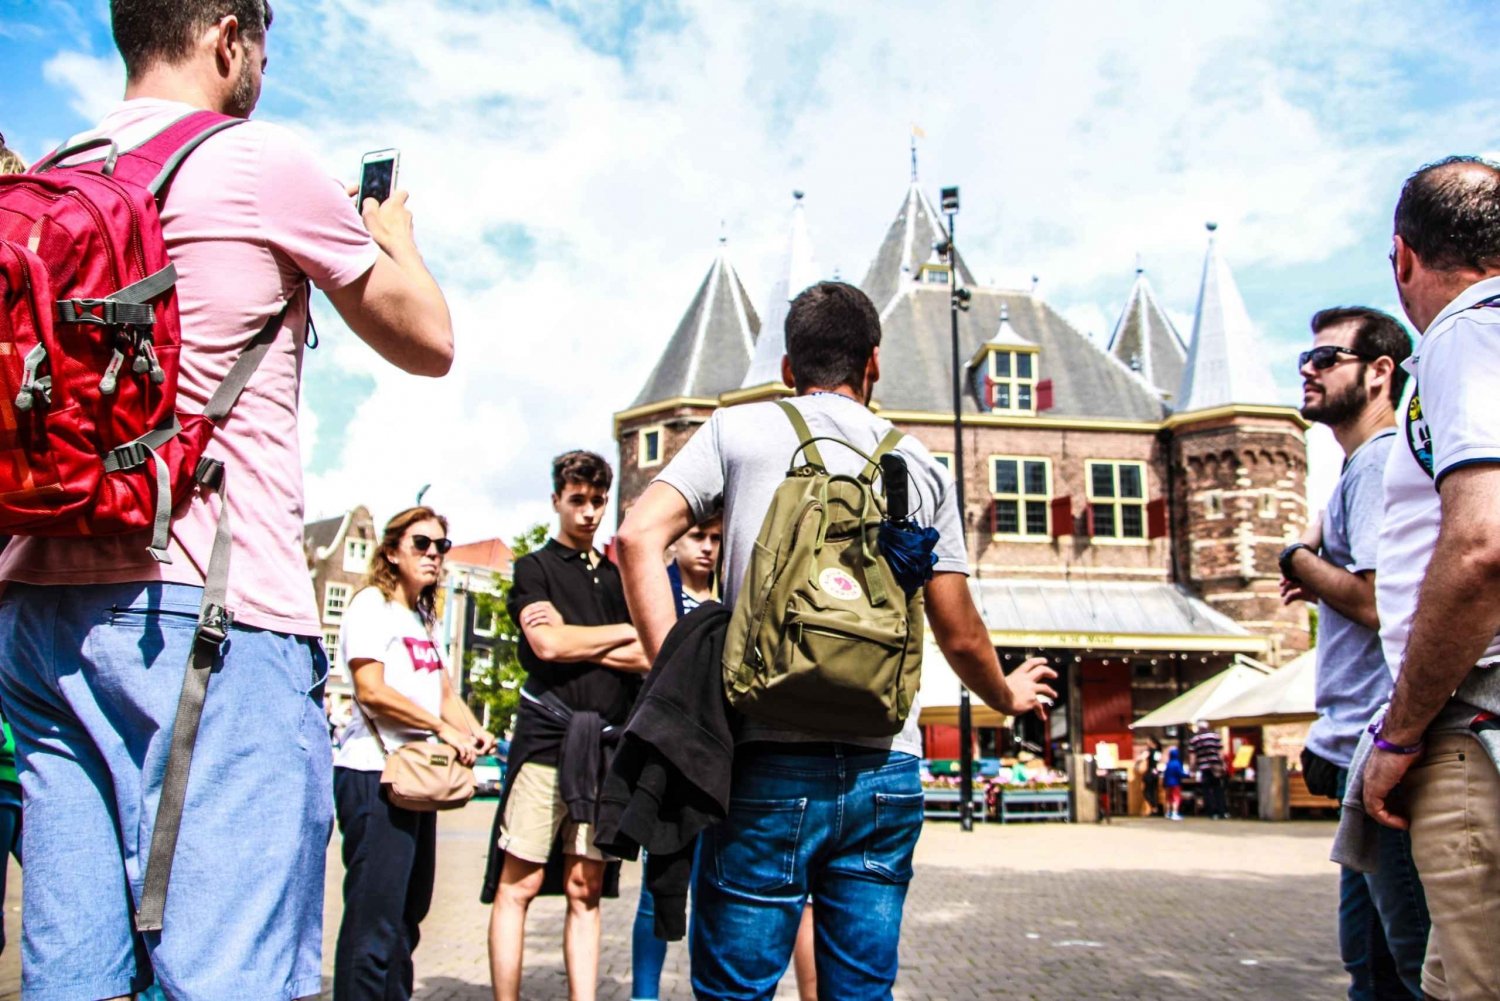 Amsterdam koko päivän: Kävely, pyöräily ja risteily lounaalla.